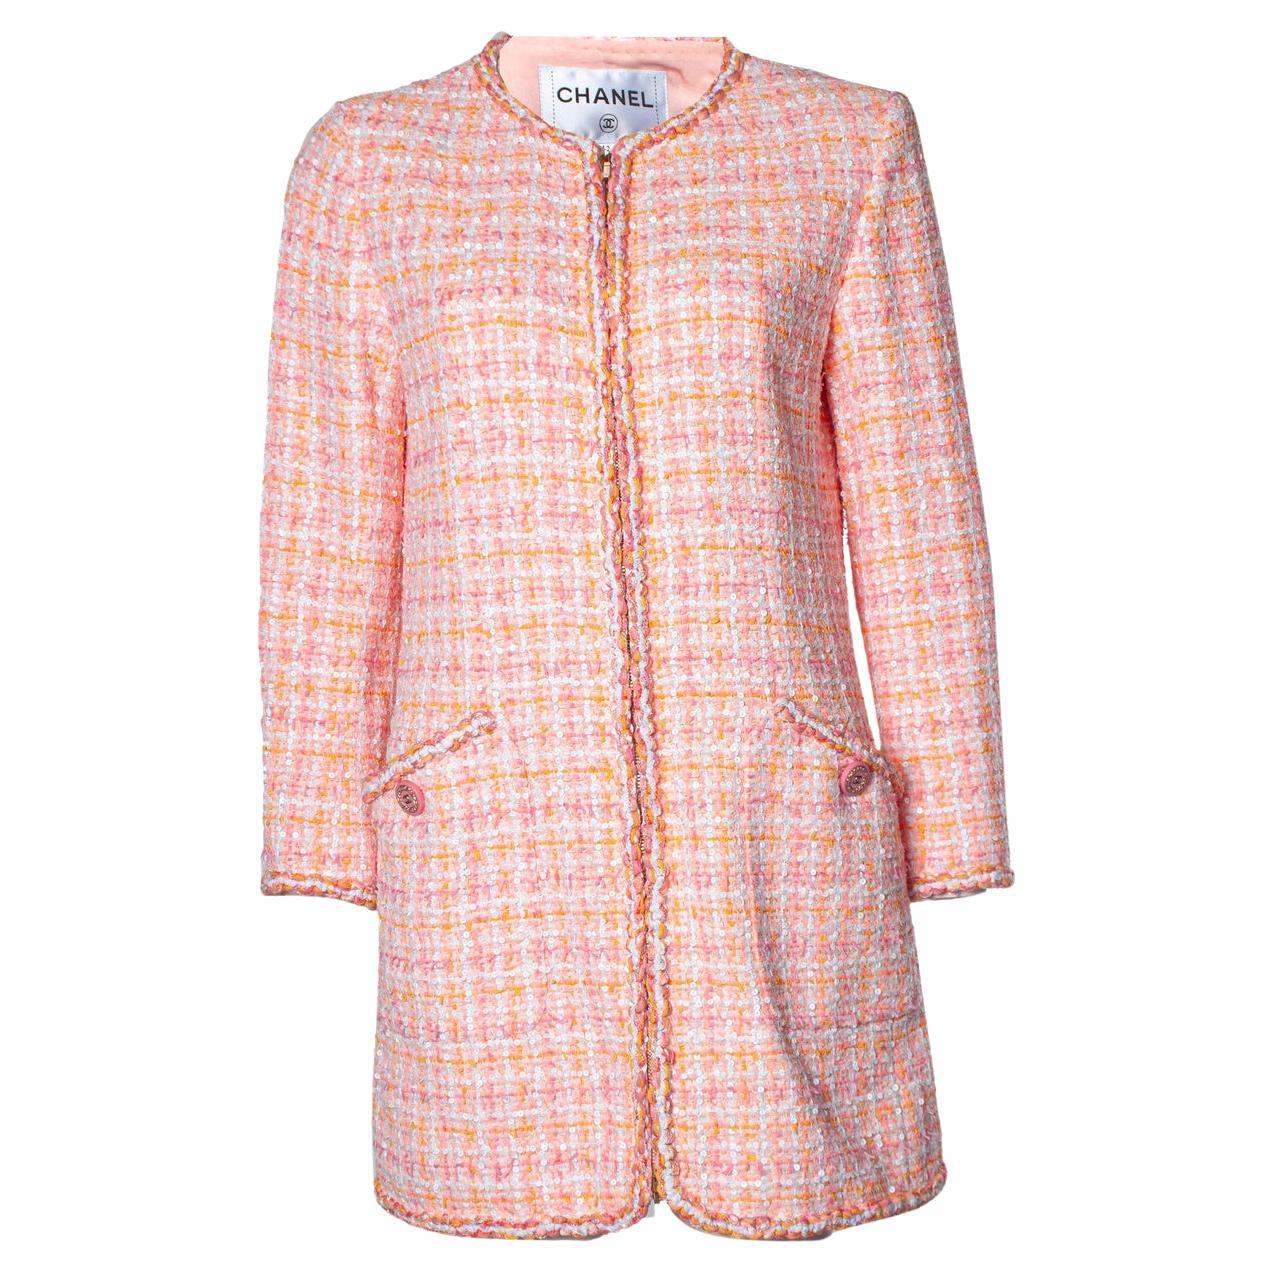 Chanel, cruise 2019 pink tweed jacket